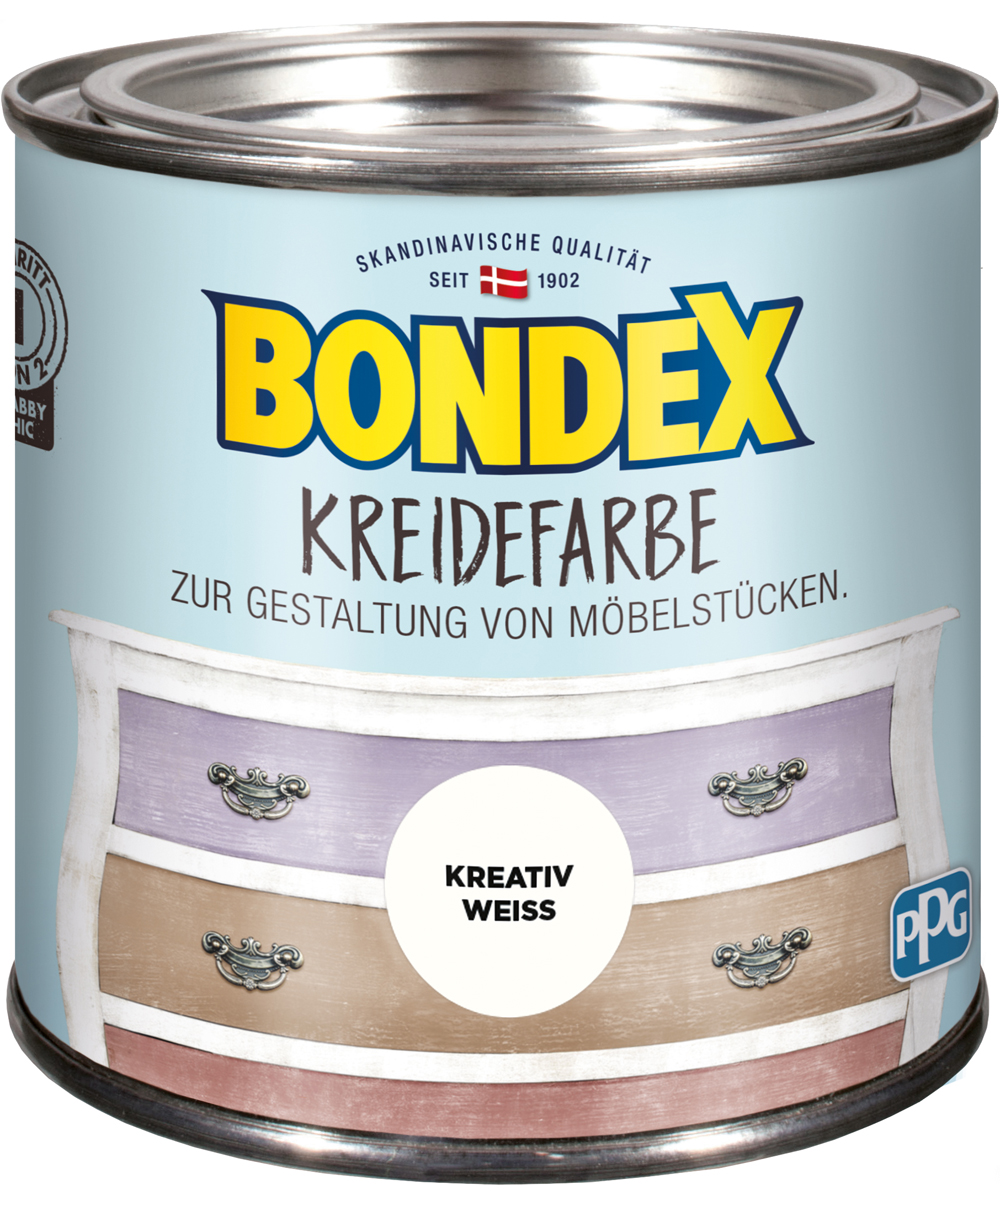 Bondex Kreidefarbe Kreativ Weiß, 0,5L